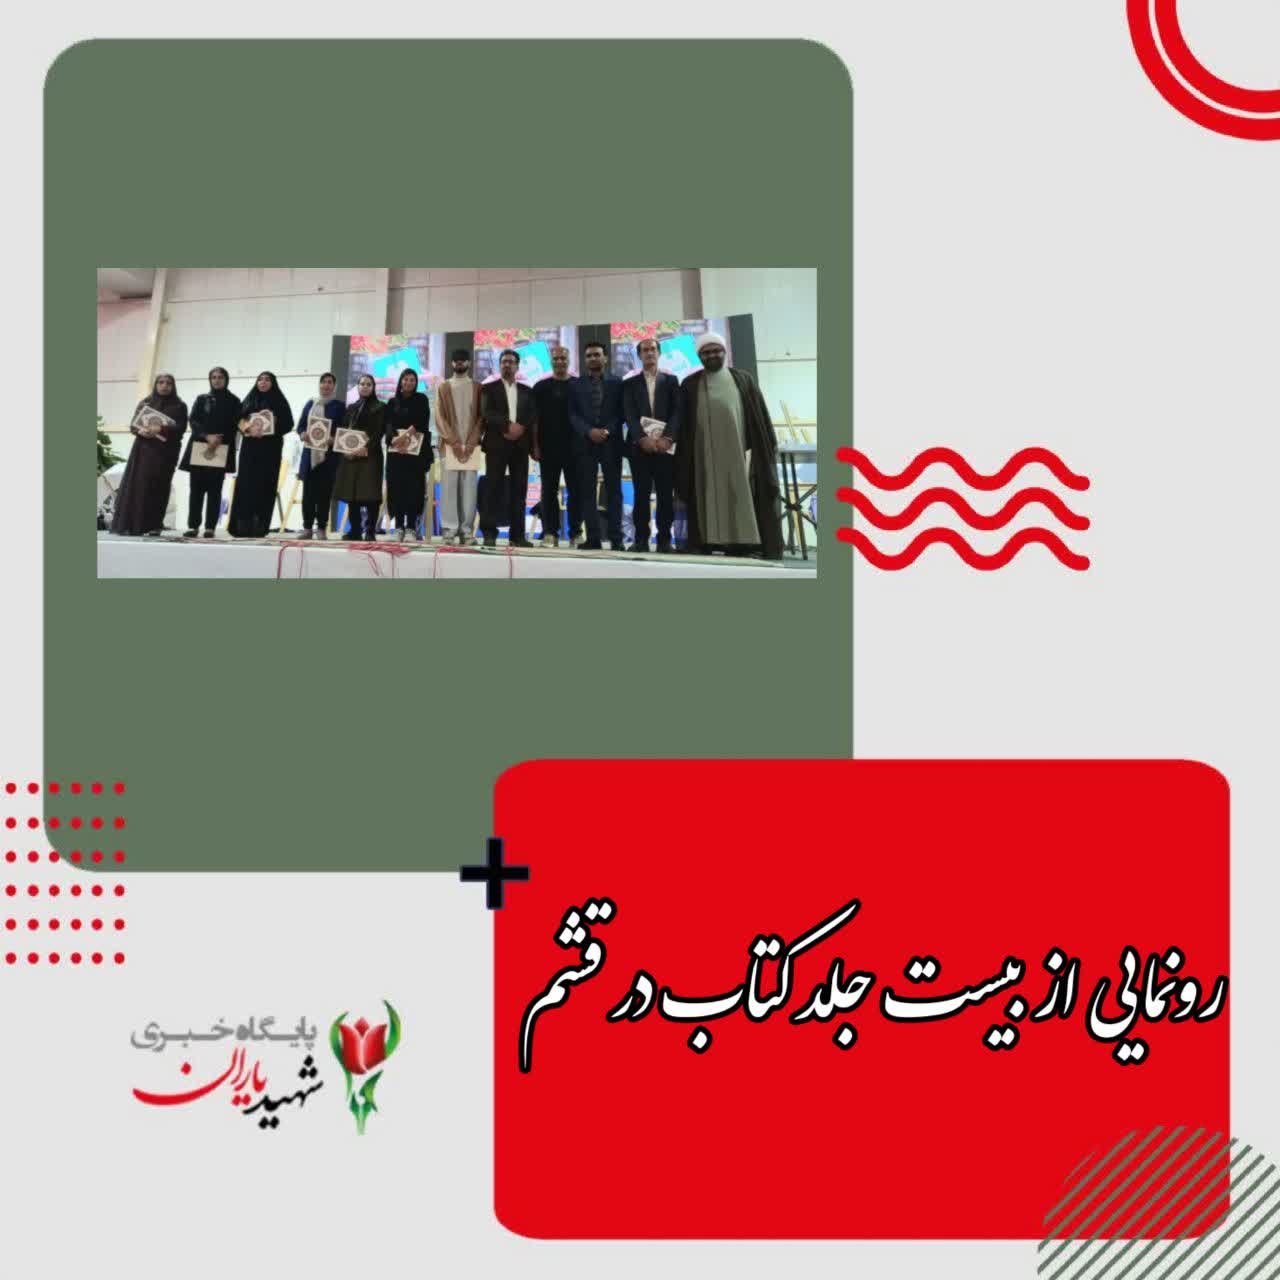 مدیرکل فرهنگ و ارشاد اسلامی سازمان منطقه آزاد قشم خبر داد: رونمایی از بیست جلد کتاب در قشم